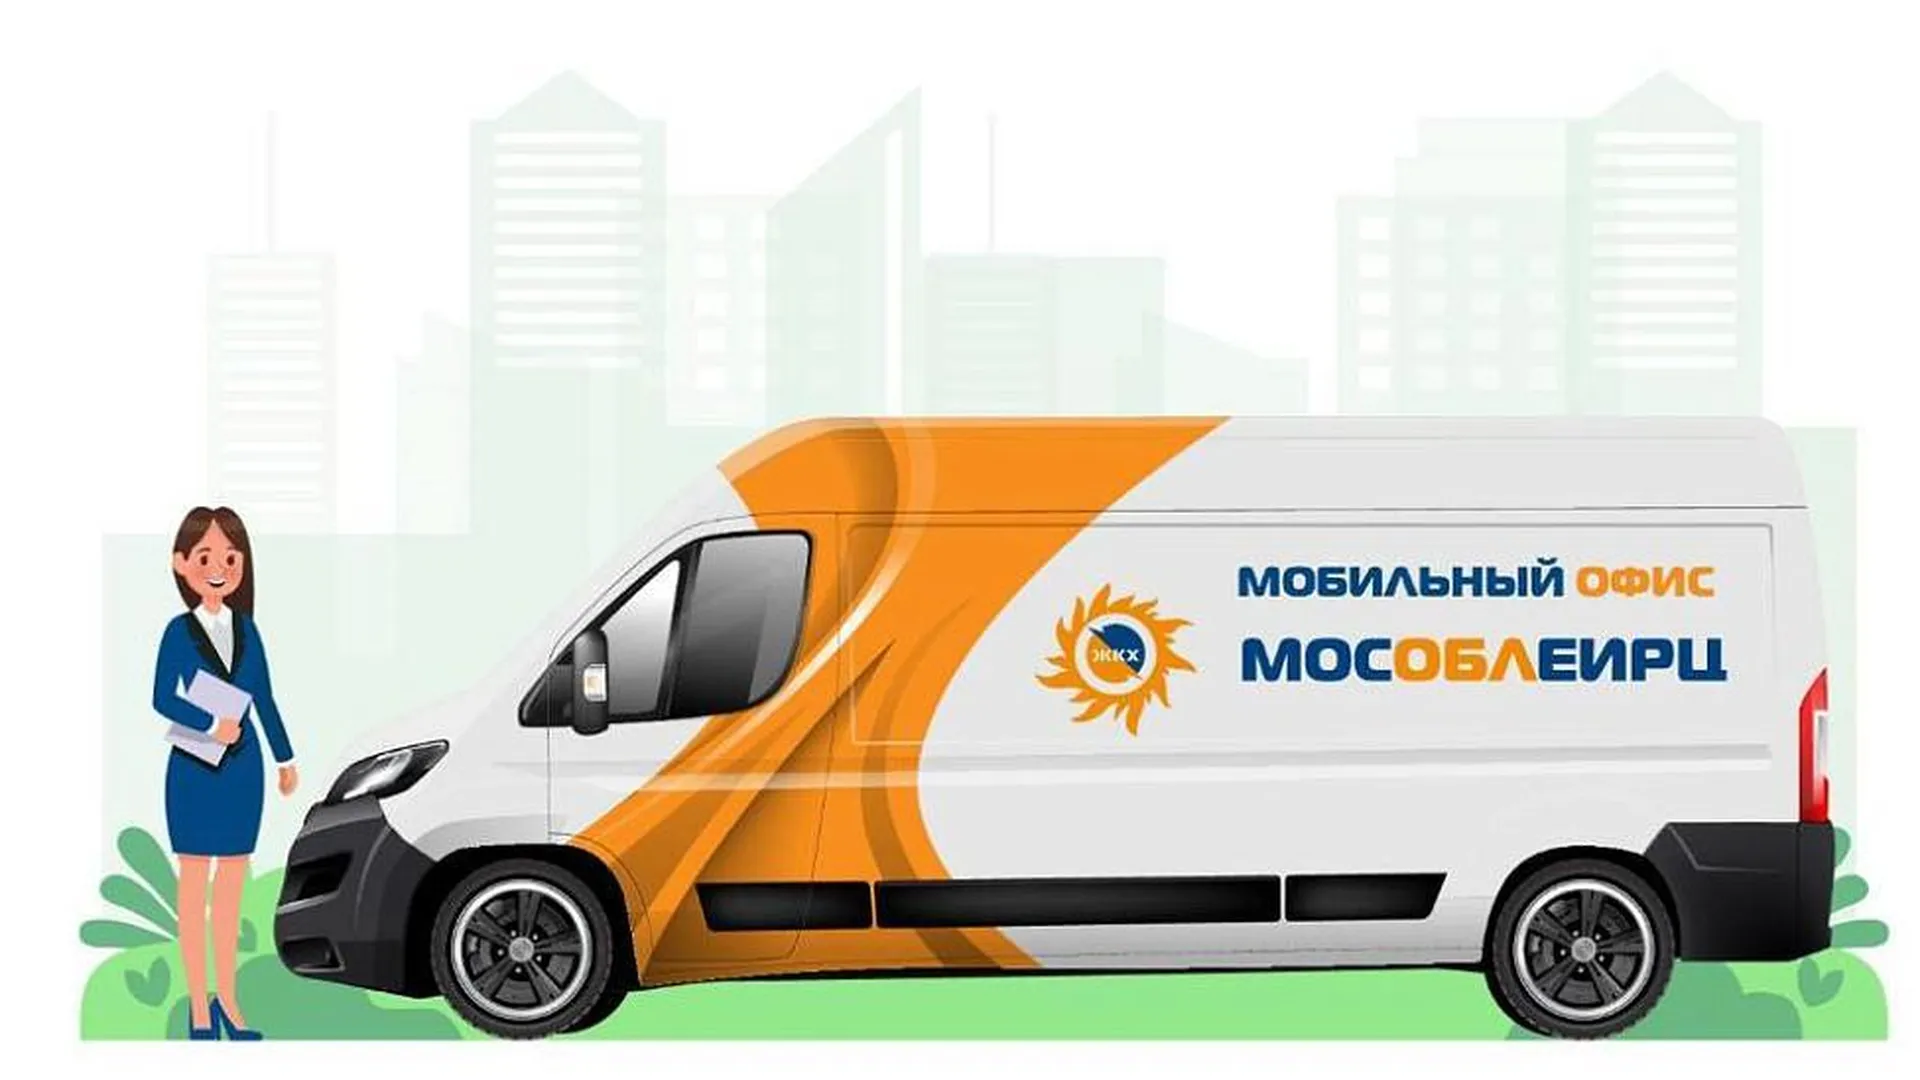 Стал известен график работы мобильного офиса МосОблЕИРЦ в декабре